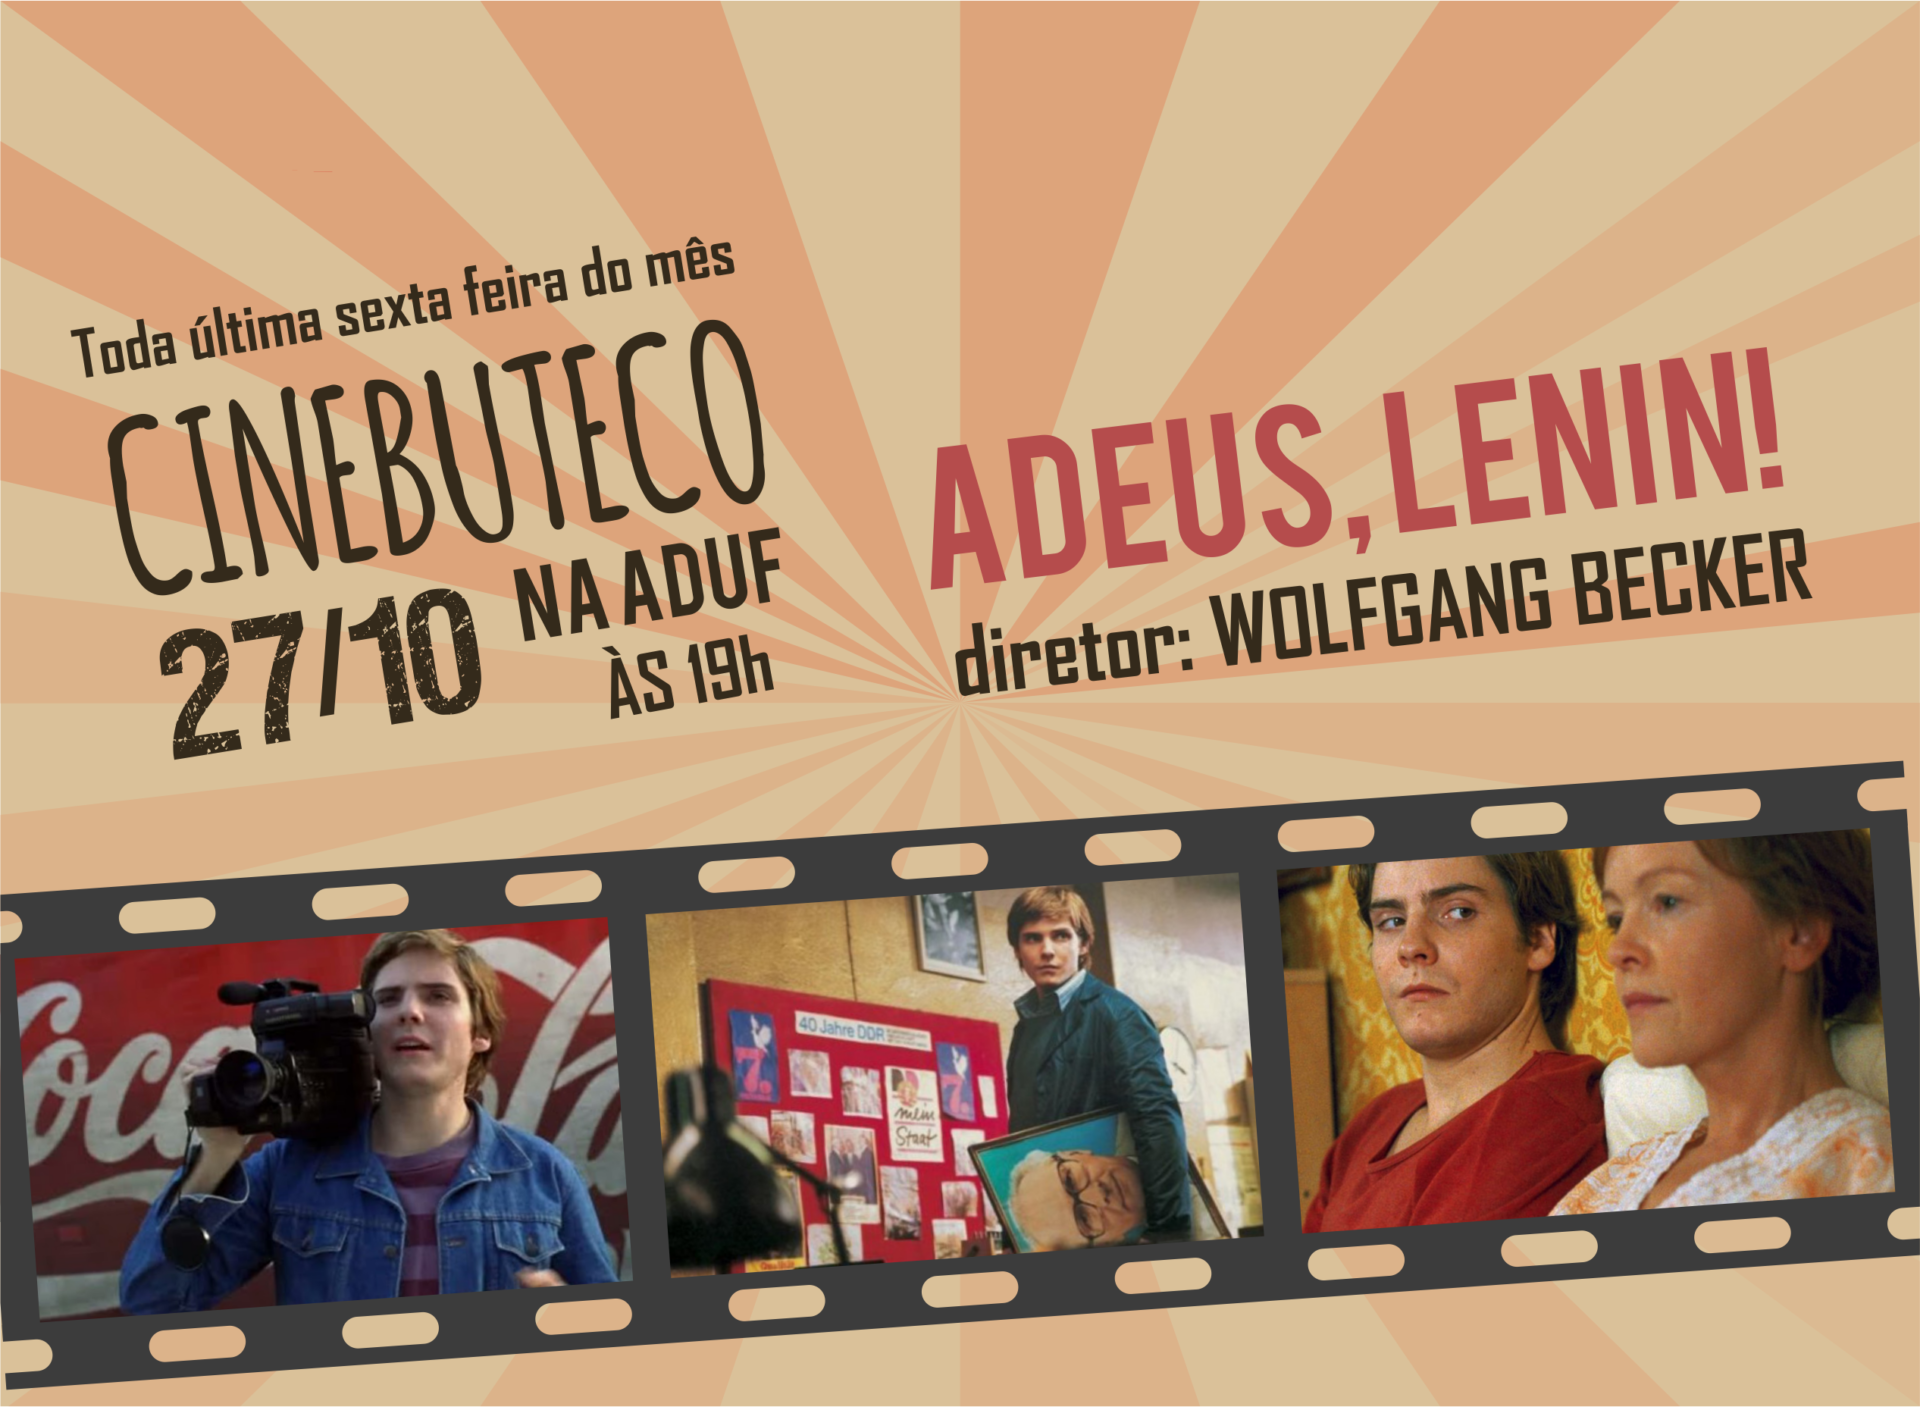 CINEBUTECO (27/10) com o filme “Adeus, Lenin!”